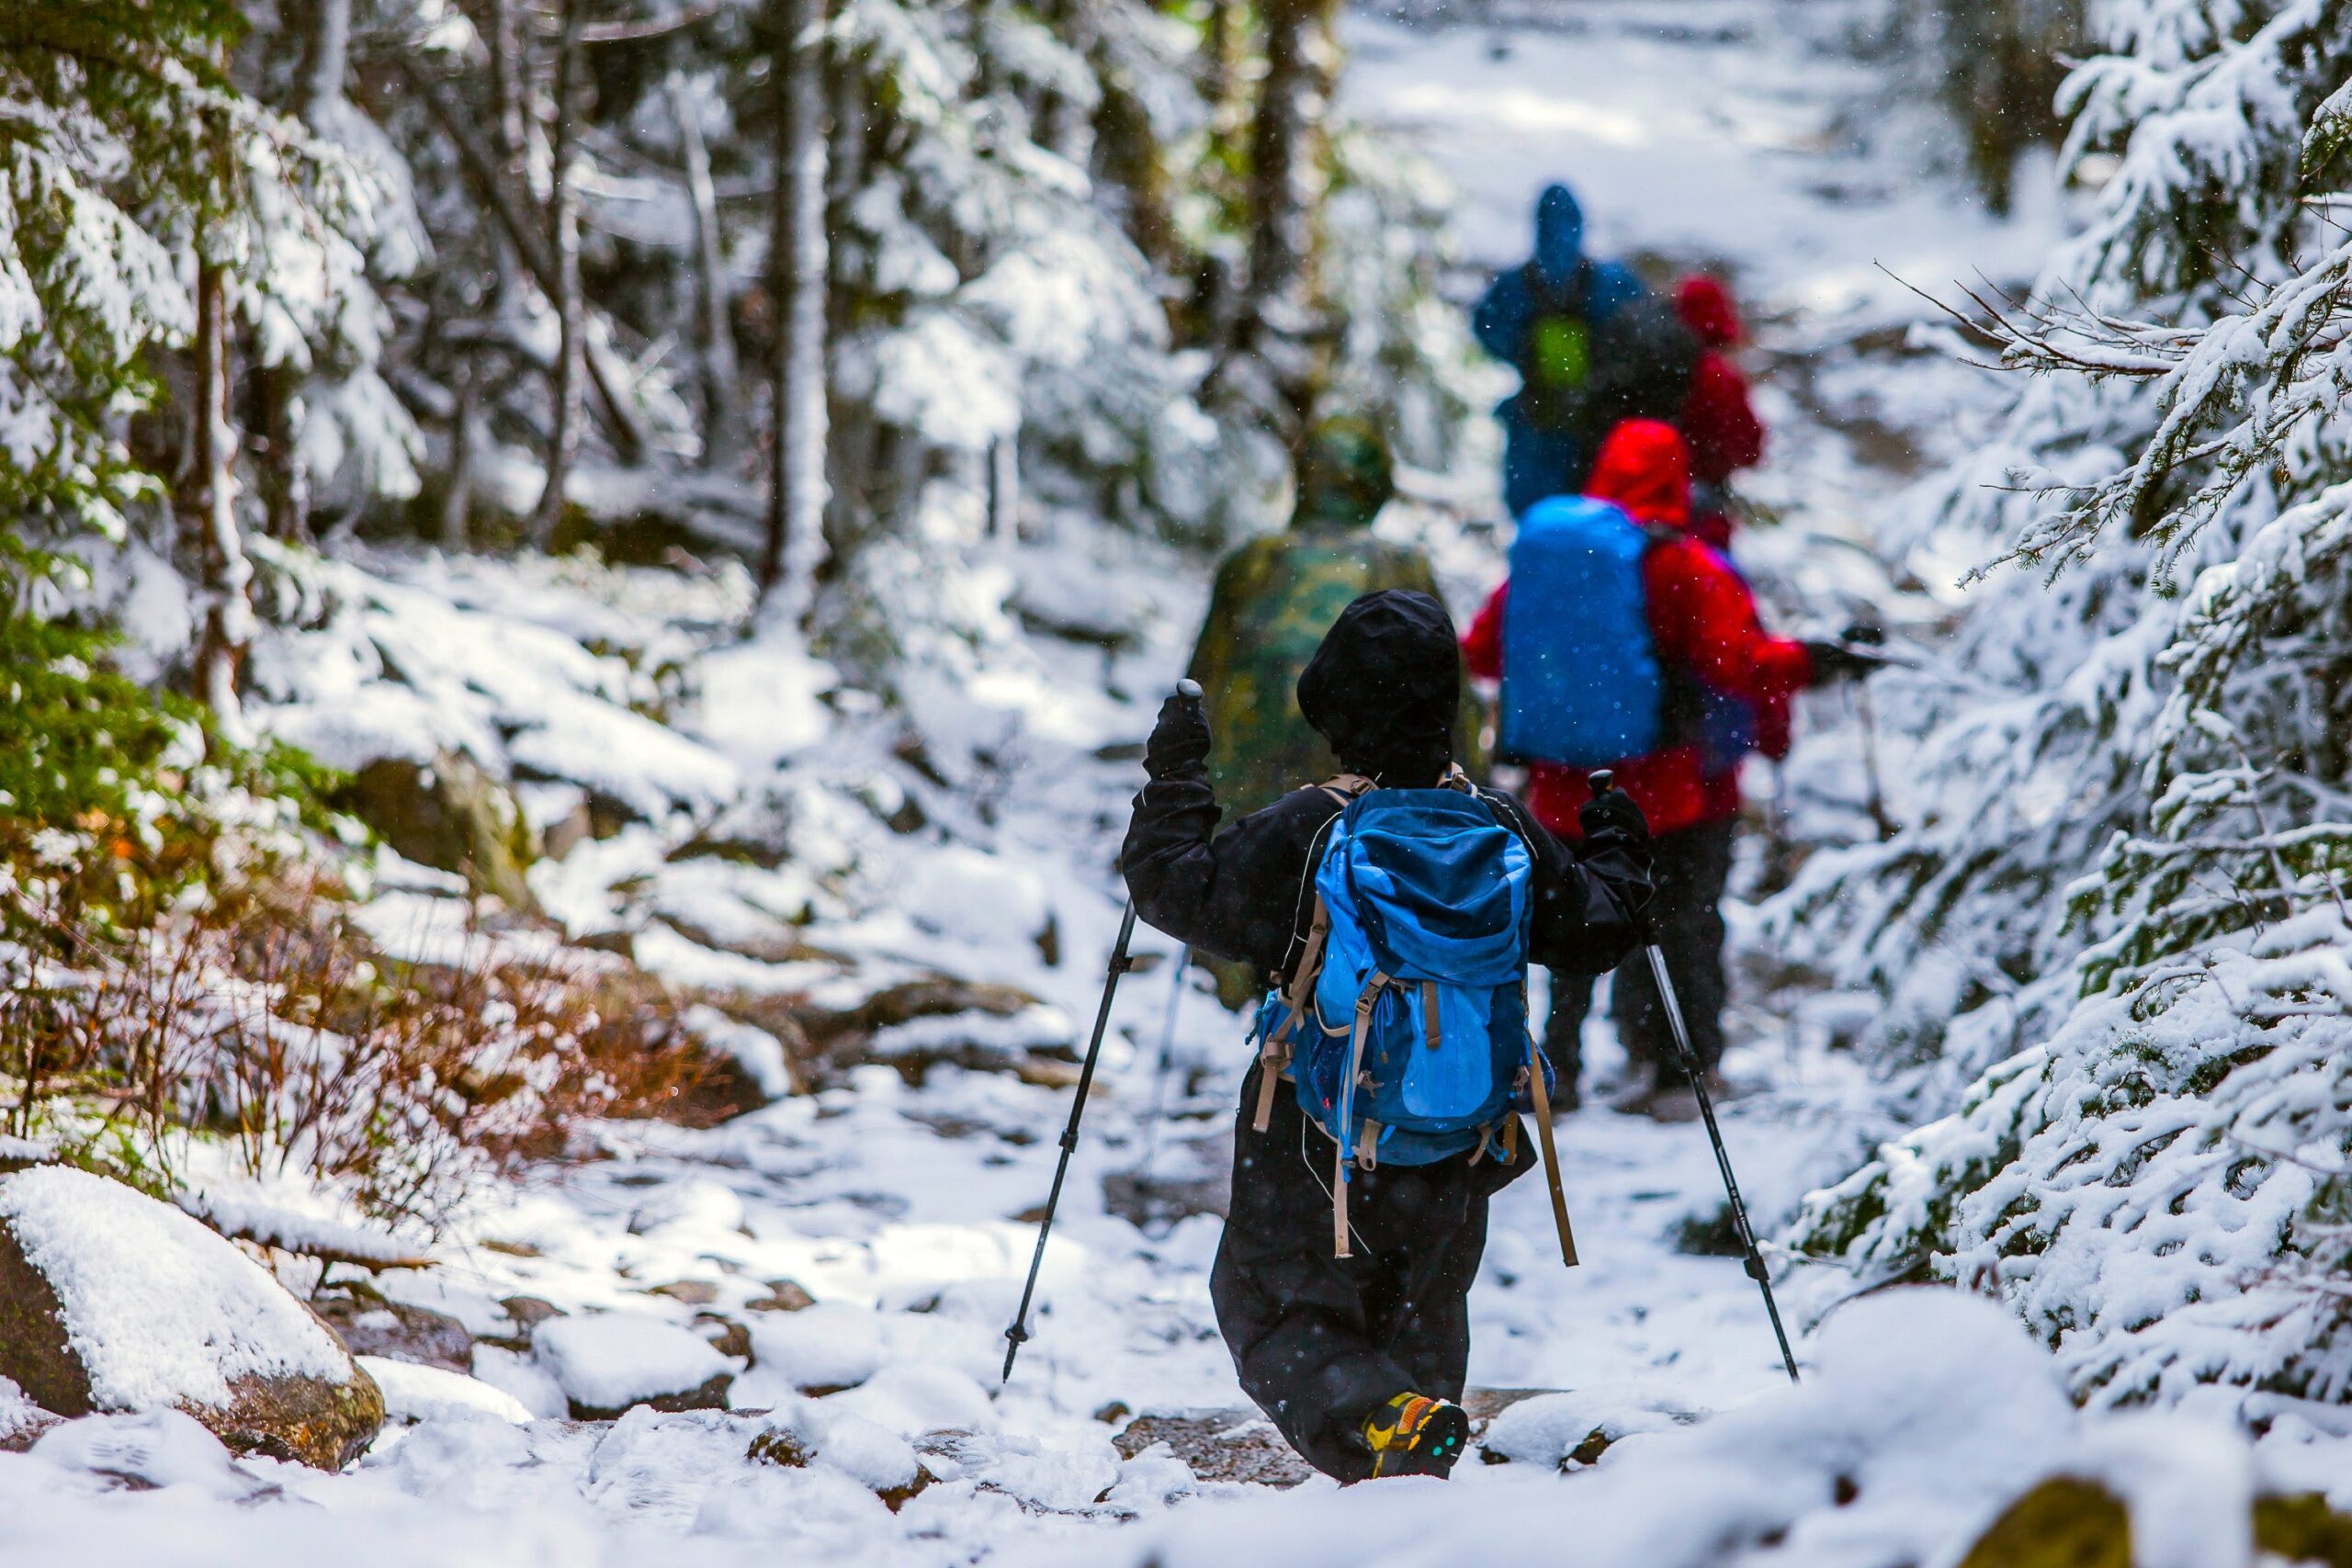 Na slici je grupa ljudi koja hoda kroz šumovit i snijegom pokriven teren. Nose ruksake i koriste štapove za hodanje. Okruženi su drvećem prekrivenim snijegom, a staza na kojoj hodaju također je pokrivena snijegom.